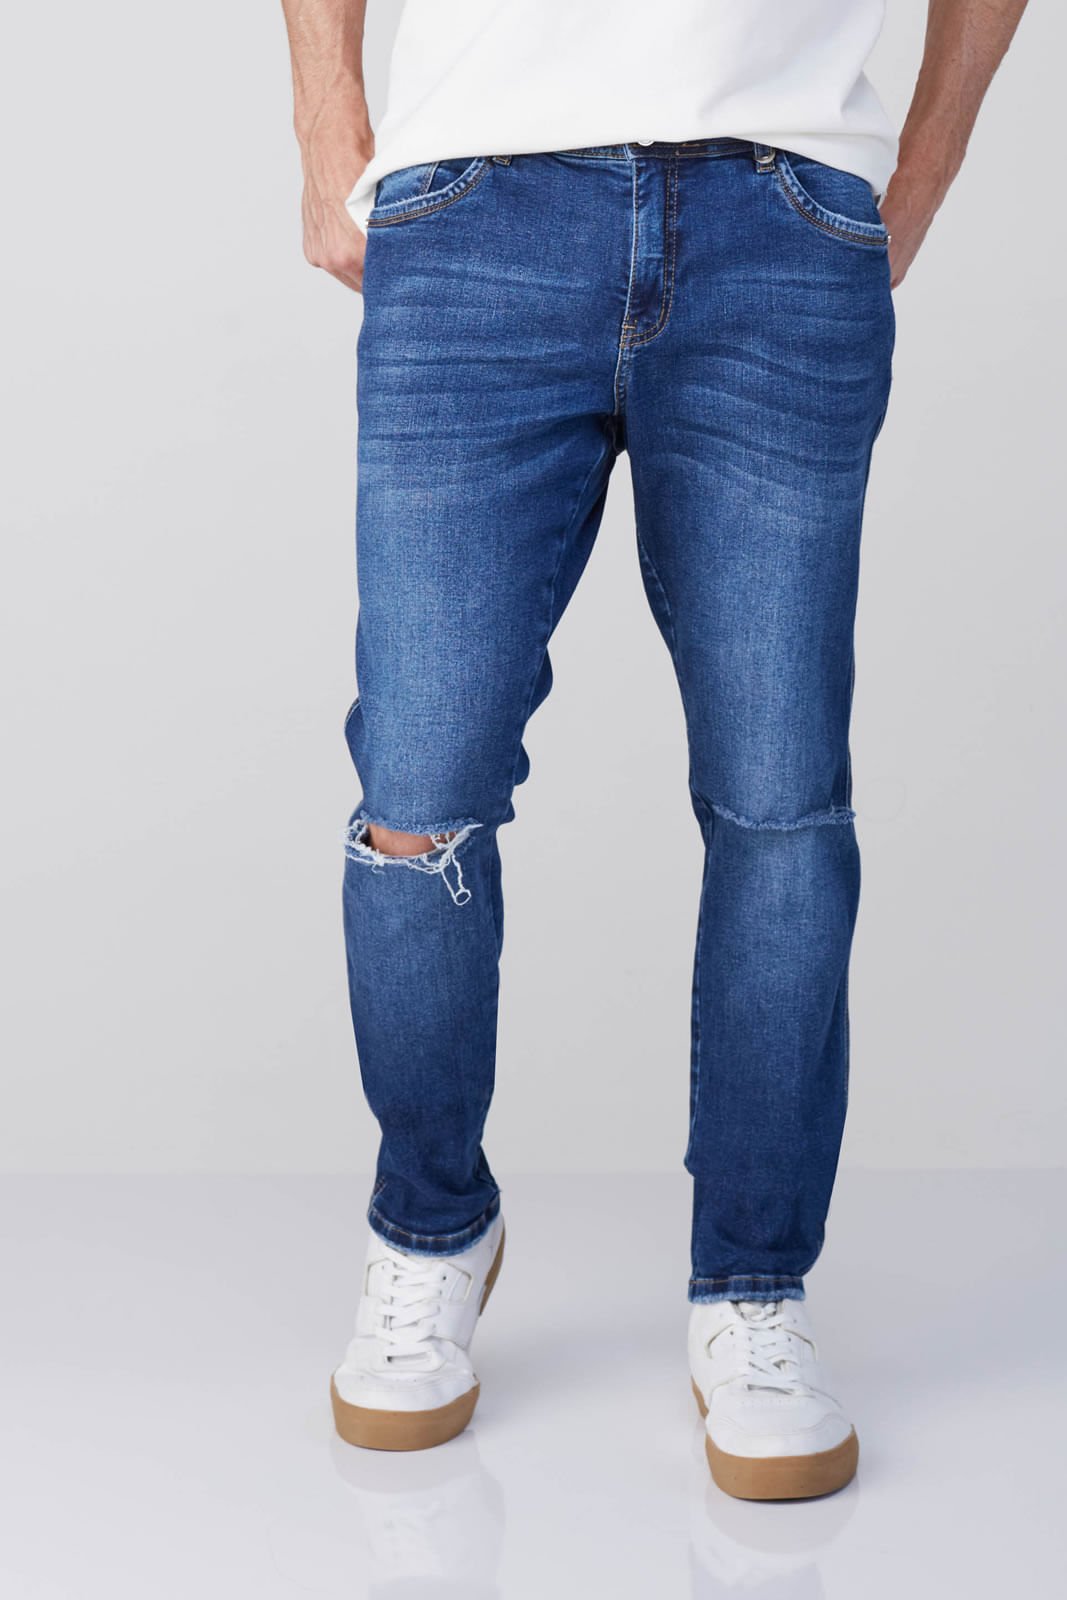 Calça Jeans Masculina com Rasgos no Joelho Osmoze Skinny 5001100045 Azul